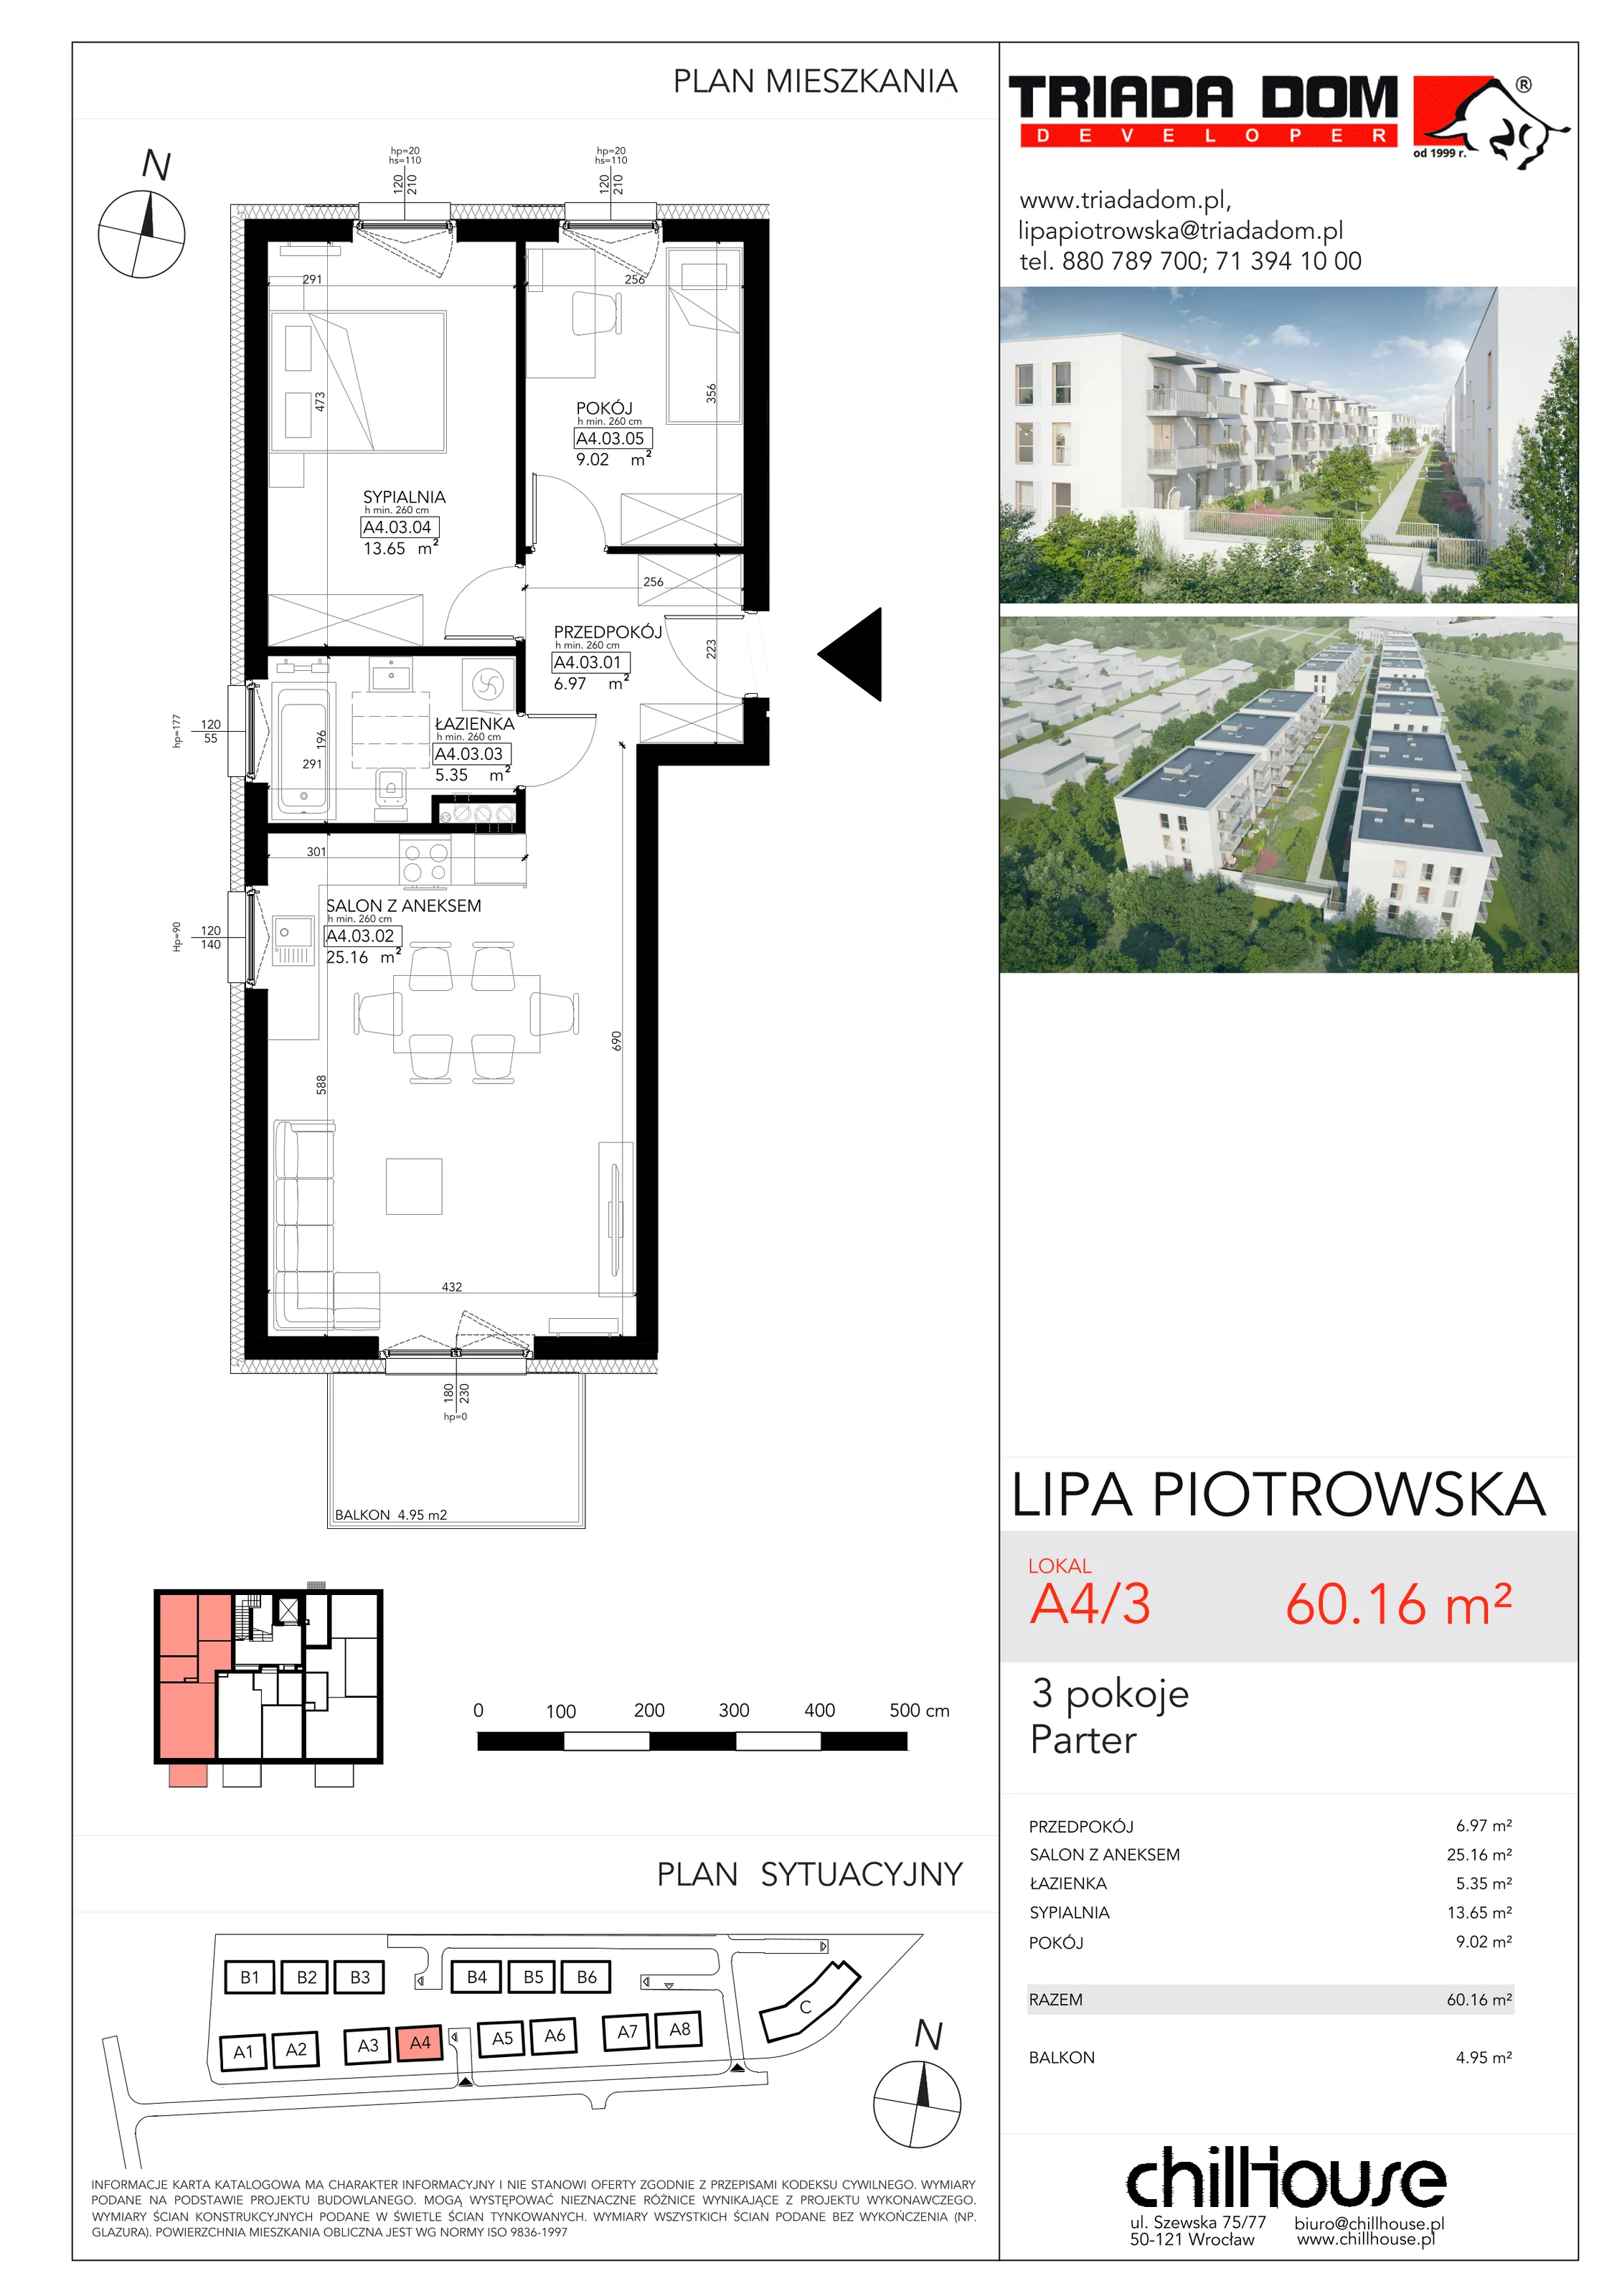 Mieszkanie 60,16 m², parter, oferta nr A43, Lipa Piotrowska, Wrocław, Lipa Piotrowska, ul. Lawendowa / Melisowa